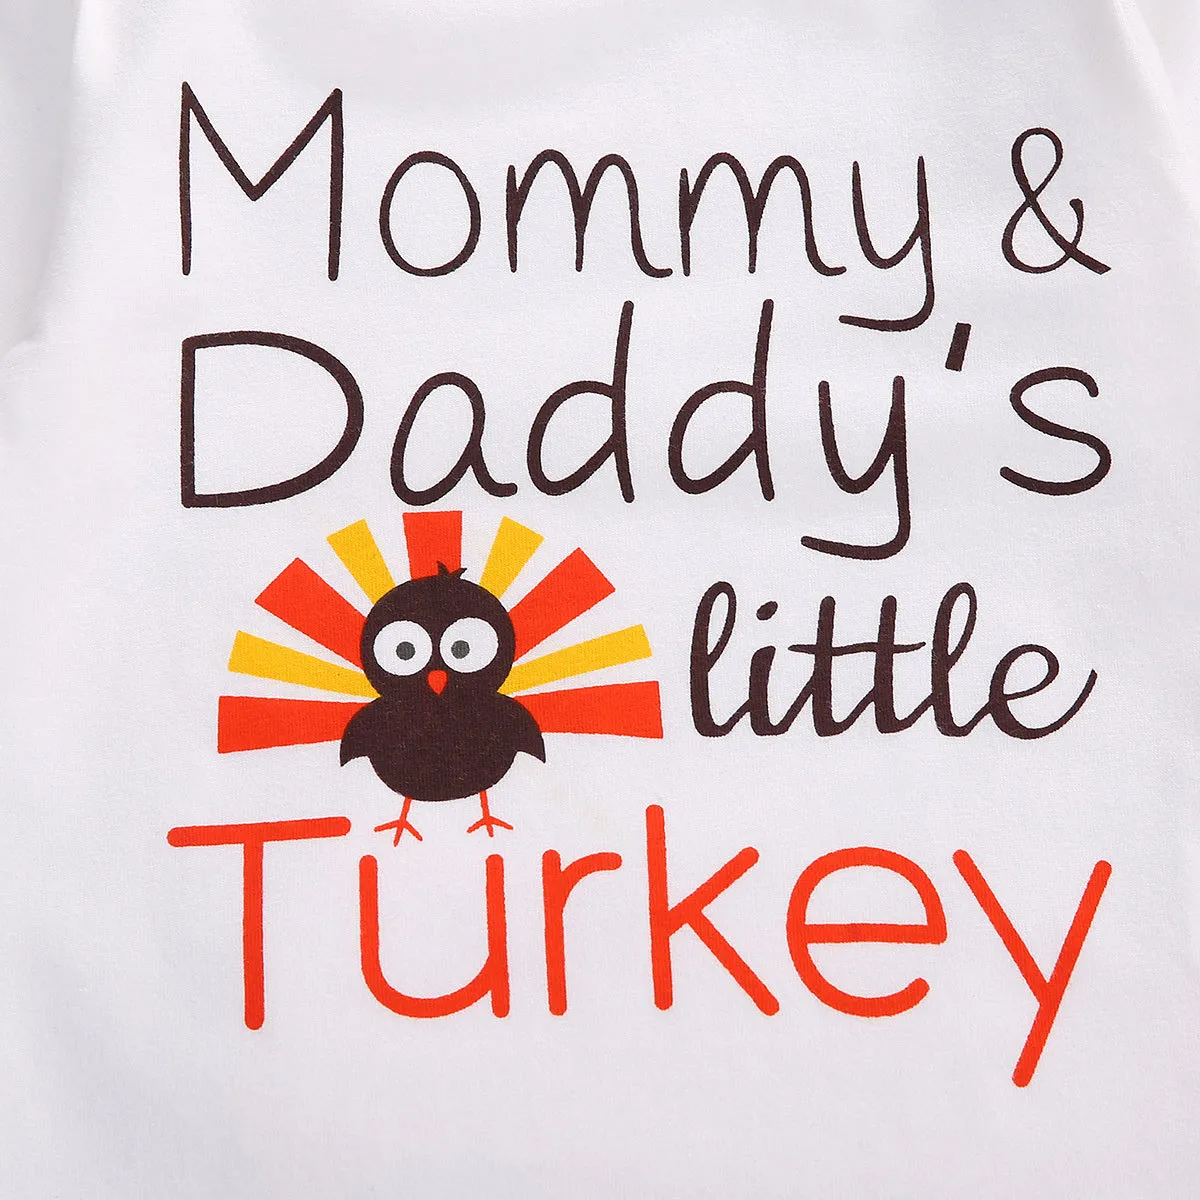 0-18M My 1st Thanksgiving Day Baby Kleding Set Geboren Baby Jongen Meisje Outfits Letter Romper Cartoon Turkije Broek 210515